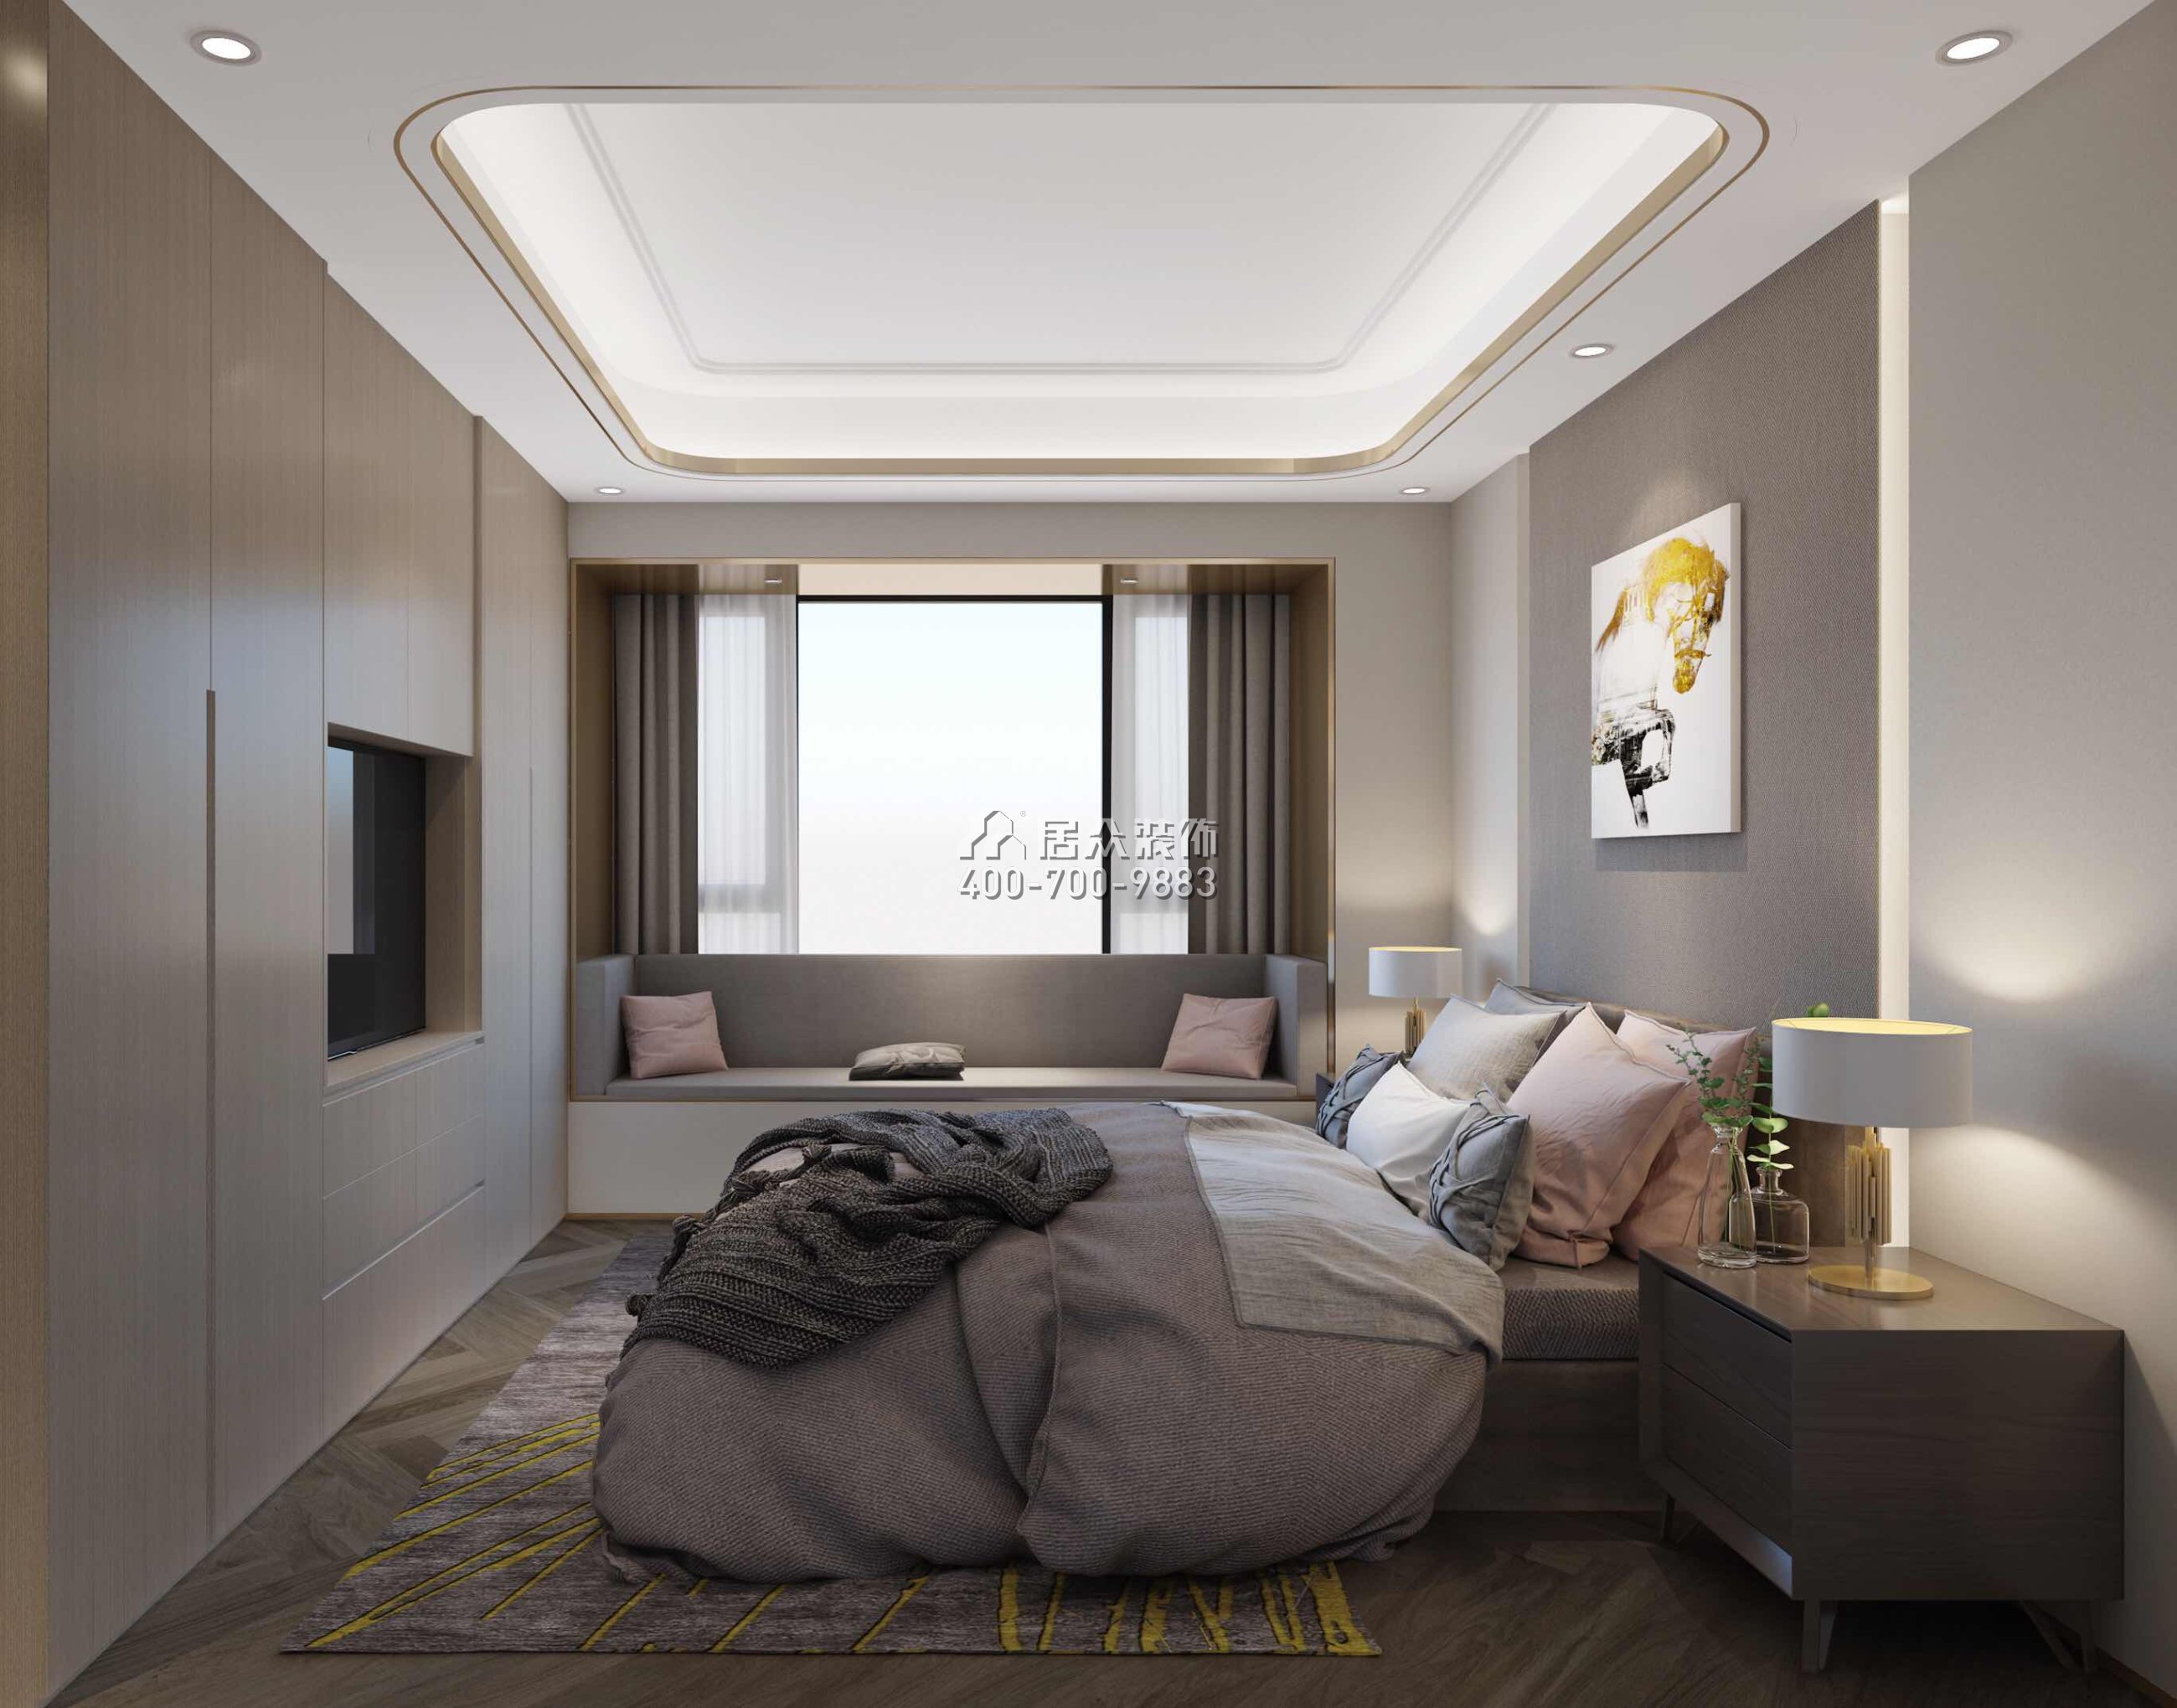 壹方中心170平方米现代简约风格平层户型卧室装修效果图